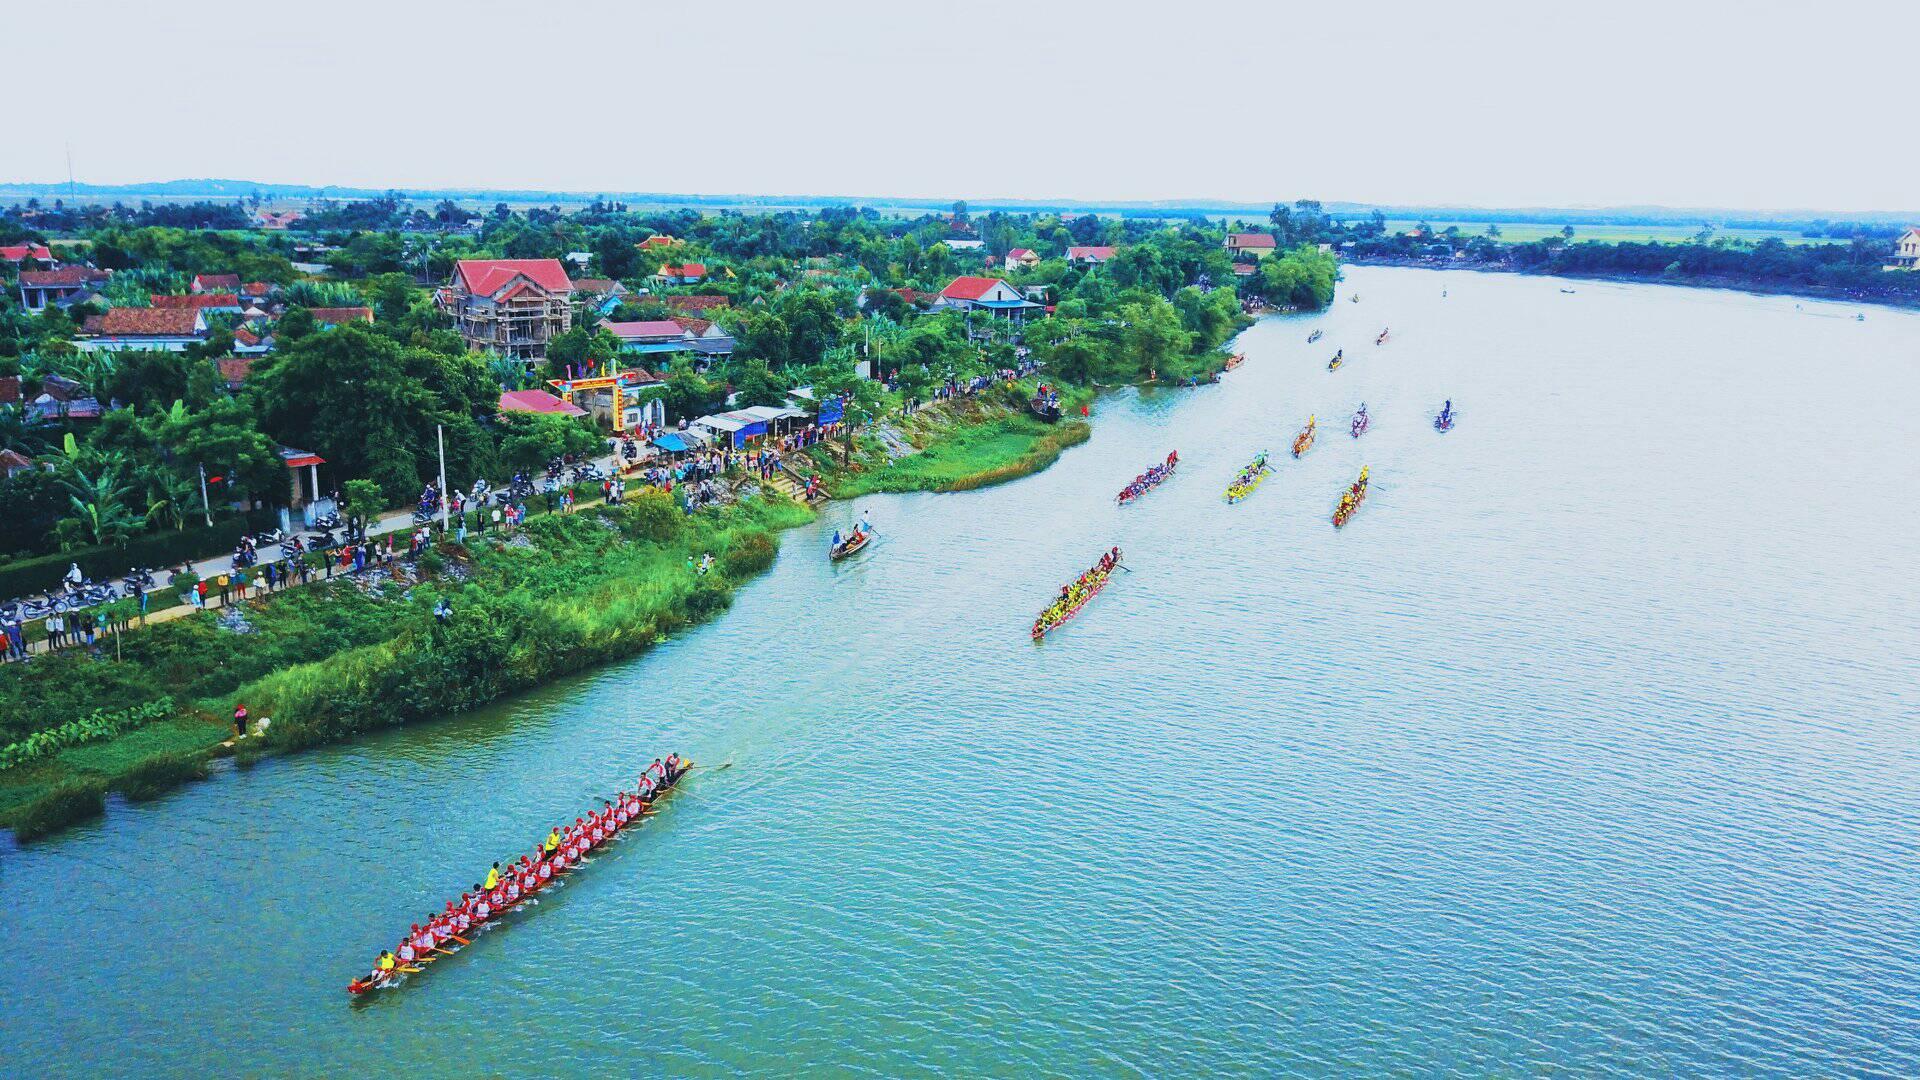 Lễ hội đua thuyền: Hãy cùng khám phá những hình ảnh đầy màu sắc và sôi động của Lễ hội đua thuyền. Đây là một trong những lễ hội truyền thống của dân tộc Việt Nam, được tổ chức mỗi năm vào ngày 5 tháng 5 âm lịch. Những chiếc thuyền trôi trên sông Hoài thu hút hàng nghìn người tham gia và theo dõi. Hãy cùng cảm nhận về sự vui tươi, hân hoan và đoàn kết của cộng đồng trong lễ hội đua thuyền.